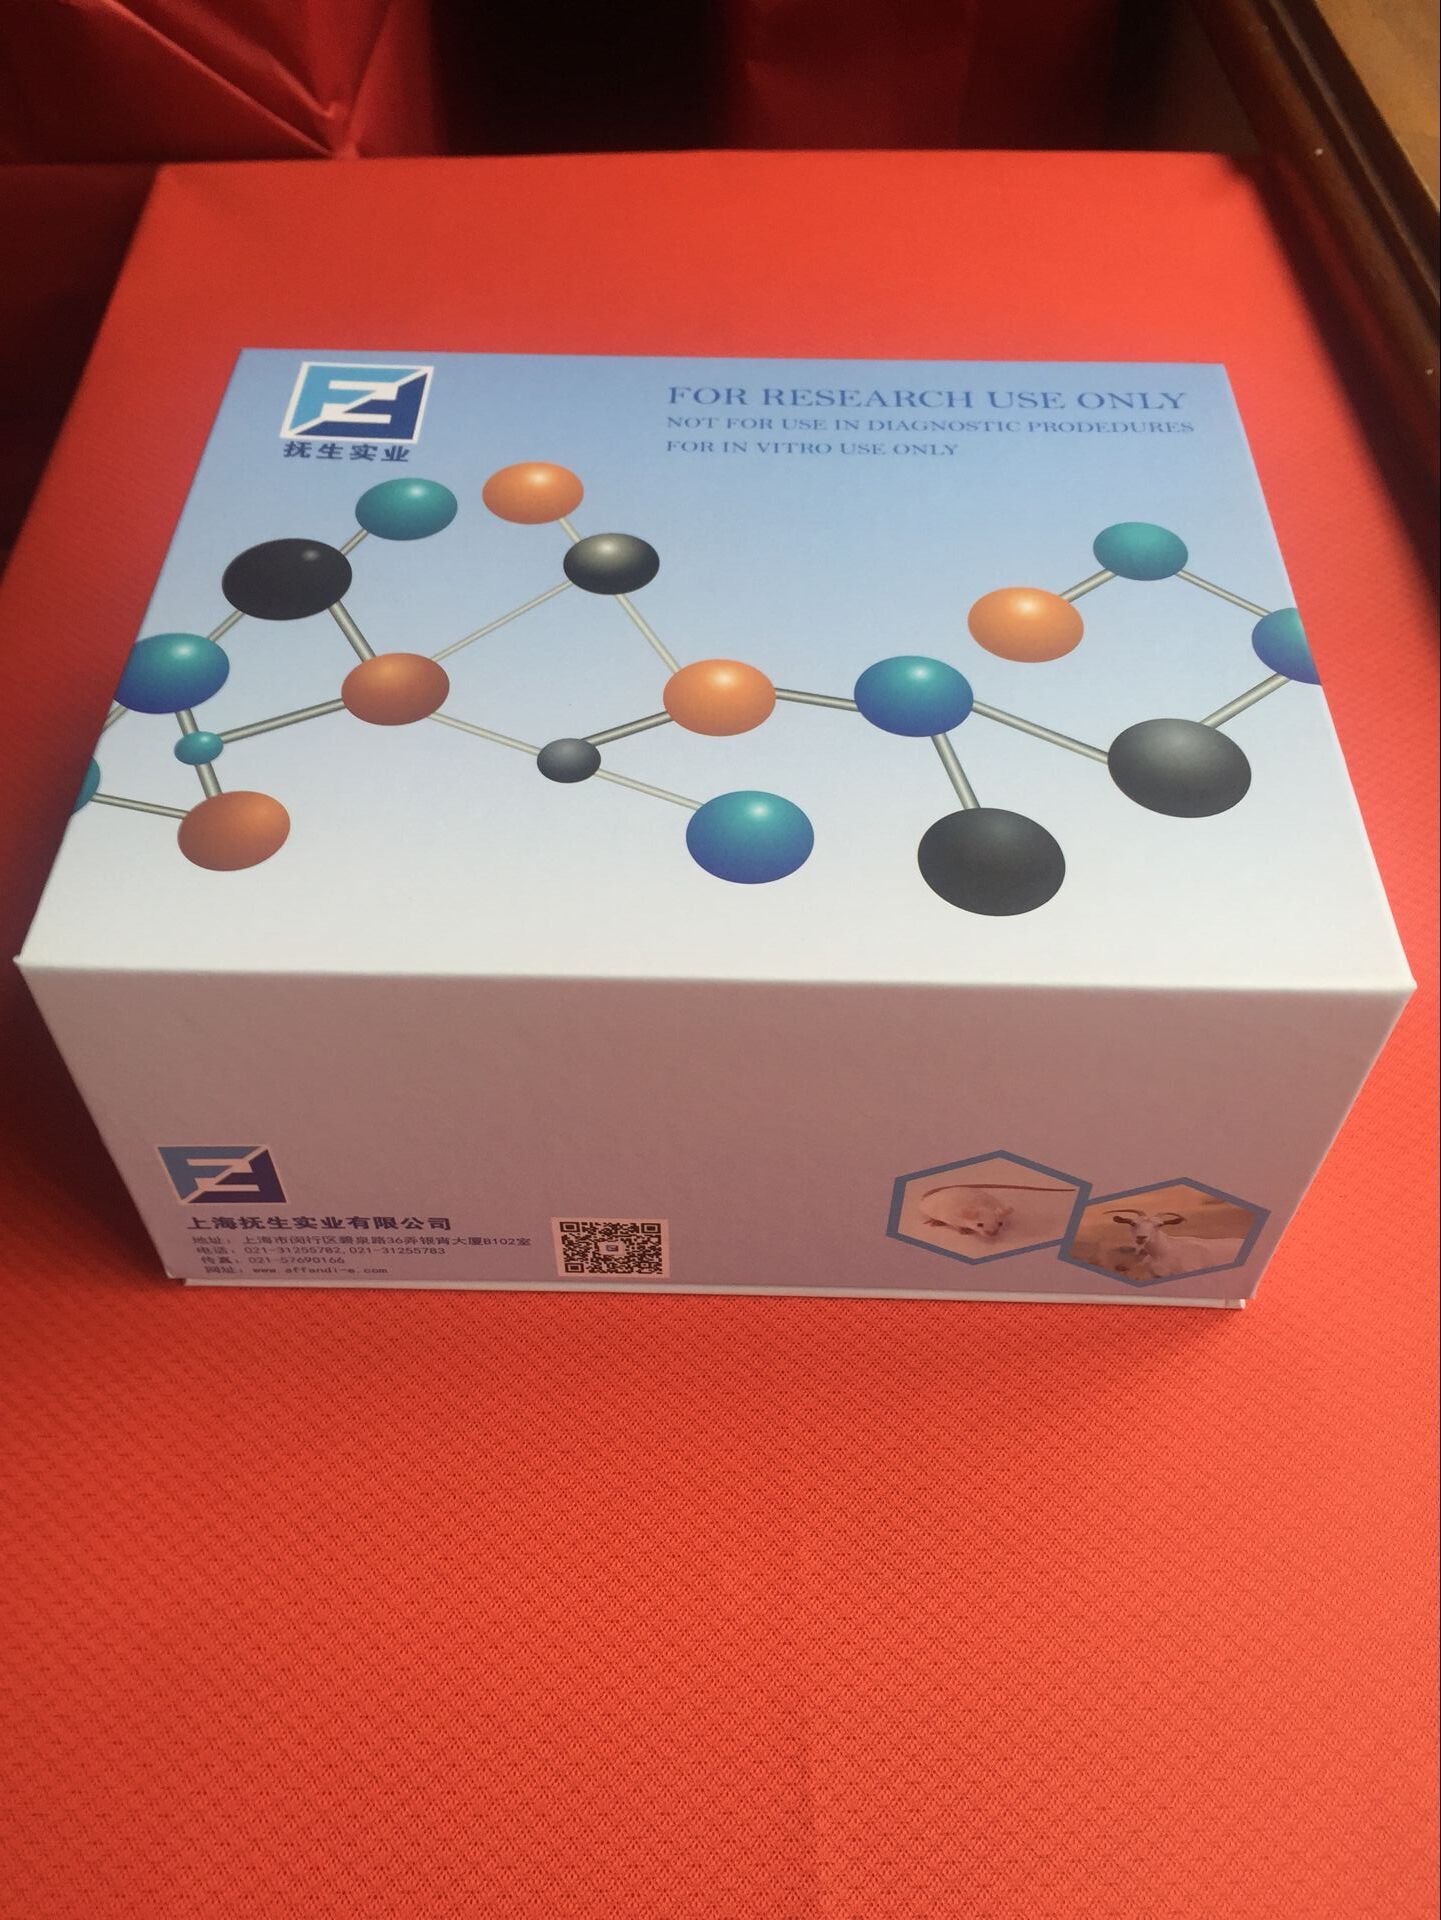 甘油肌醇锚定高密度脂蛋白结合蛋白1Elisa检测试剂盒说明书